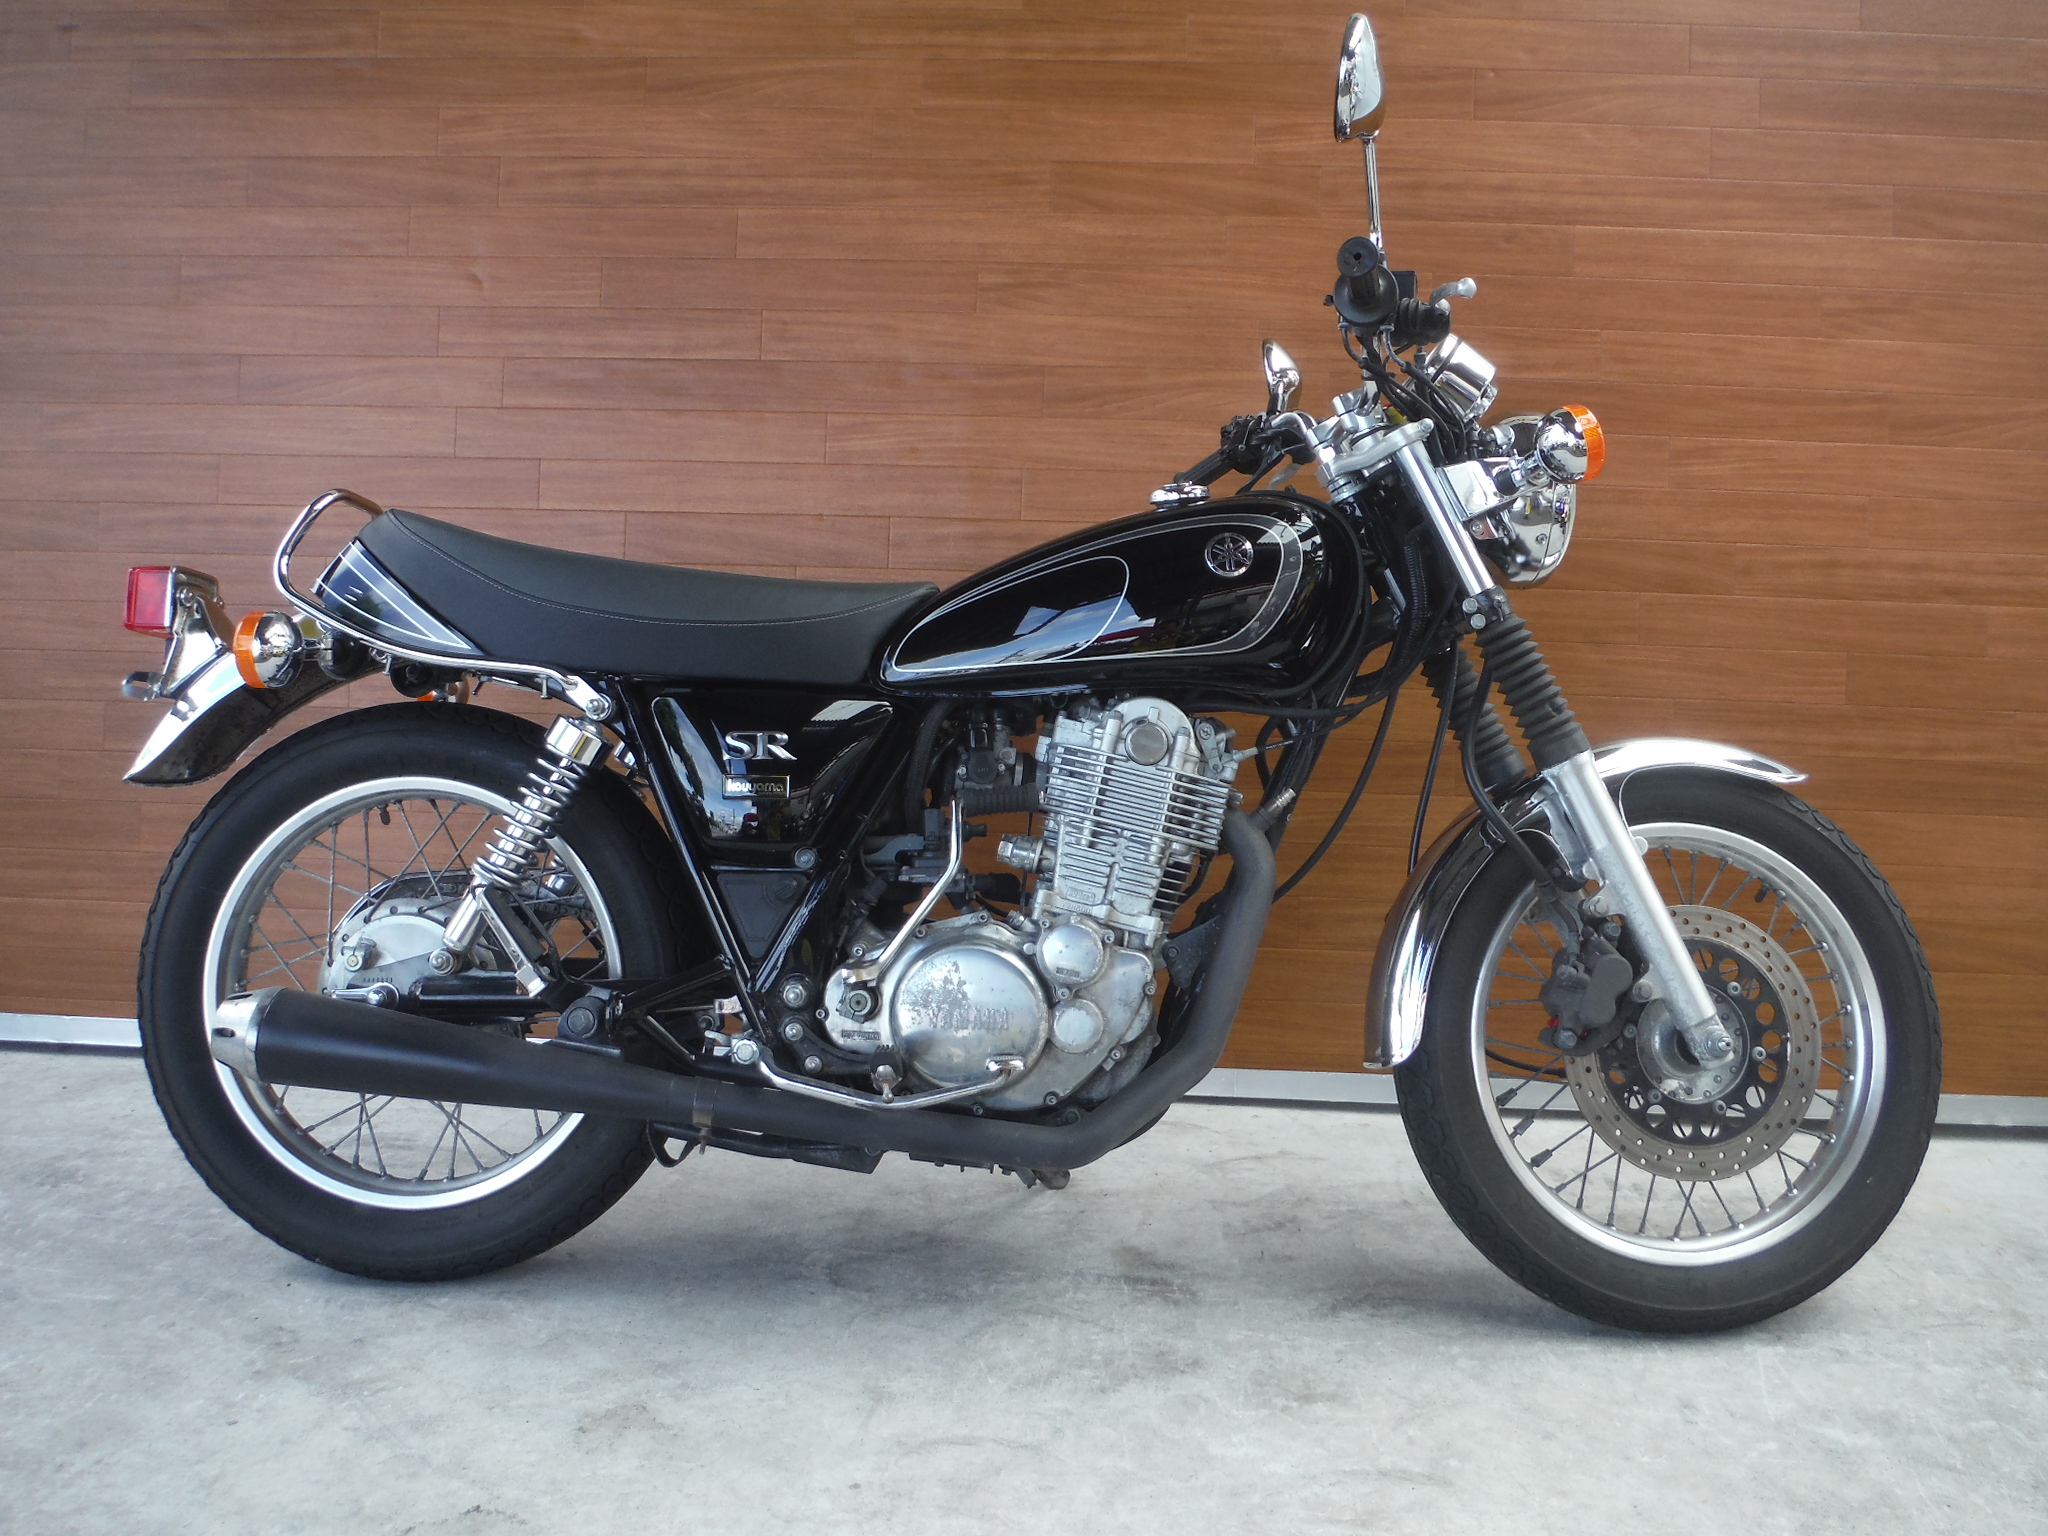 熊本中古車バイク情報 ヤマハ Sr400 400 12年モデル 黒 熊本のバイクショップ アール バイクの新車 中古車販売や買取 レンタルバイクのことならおまかせください